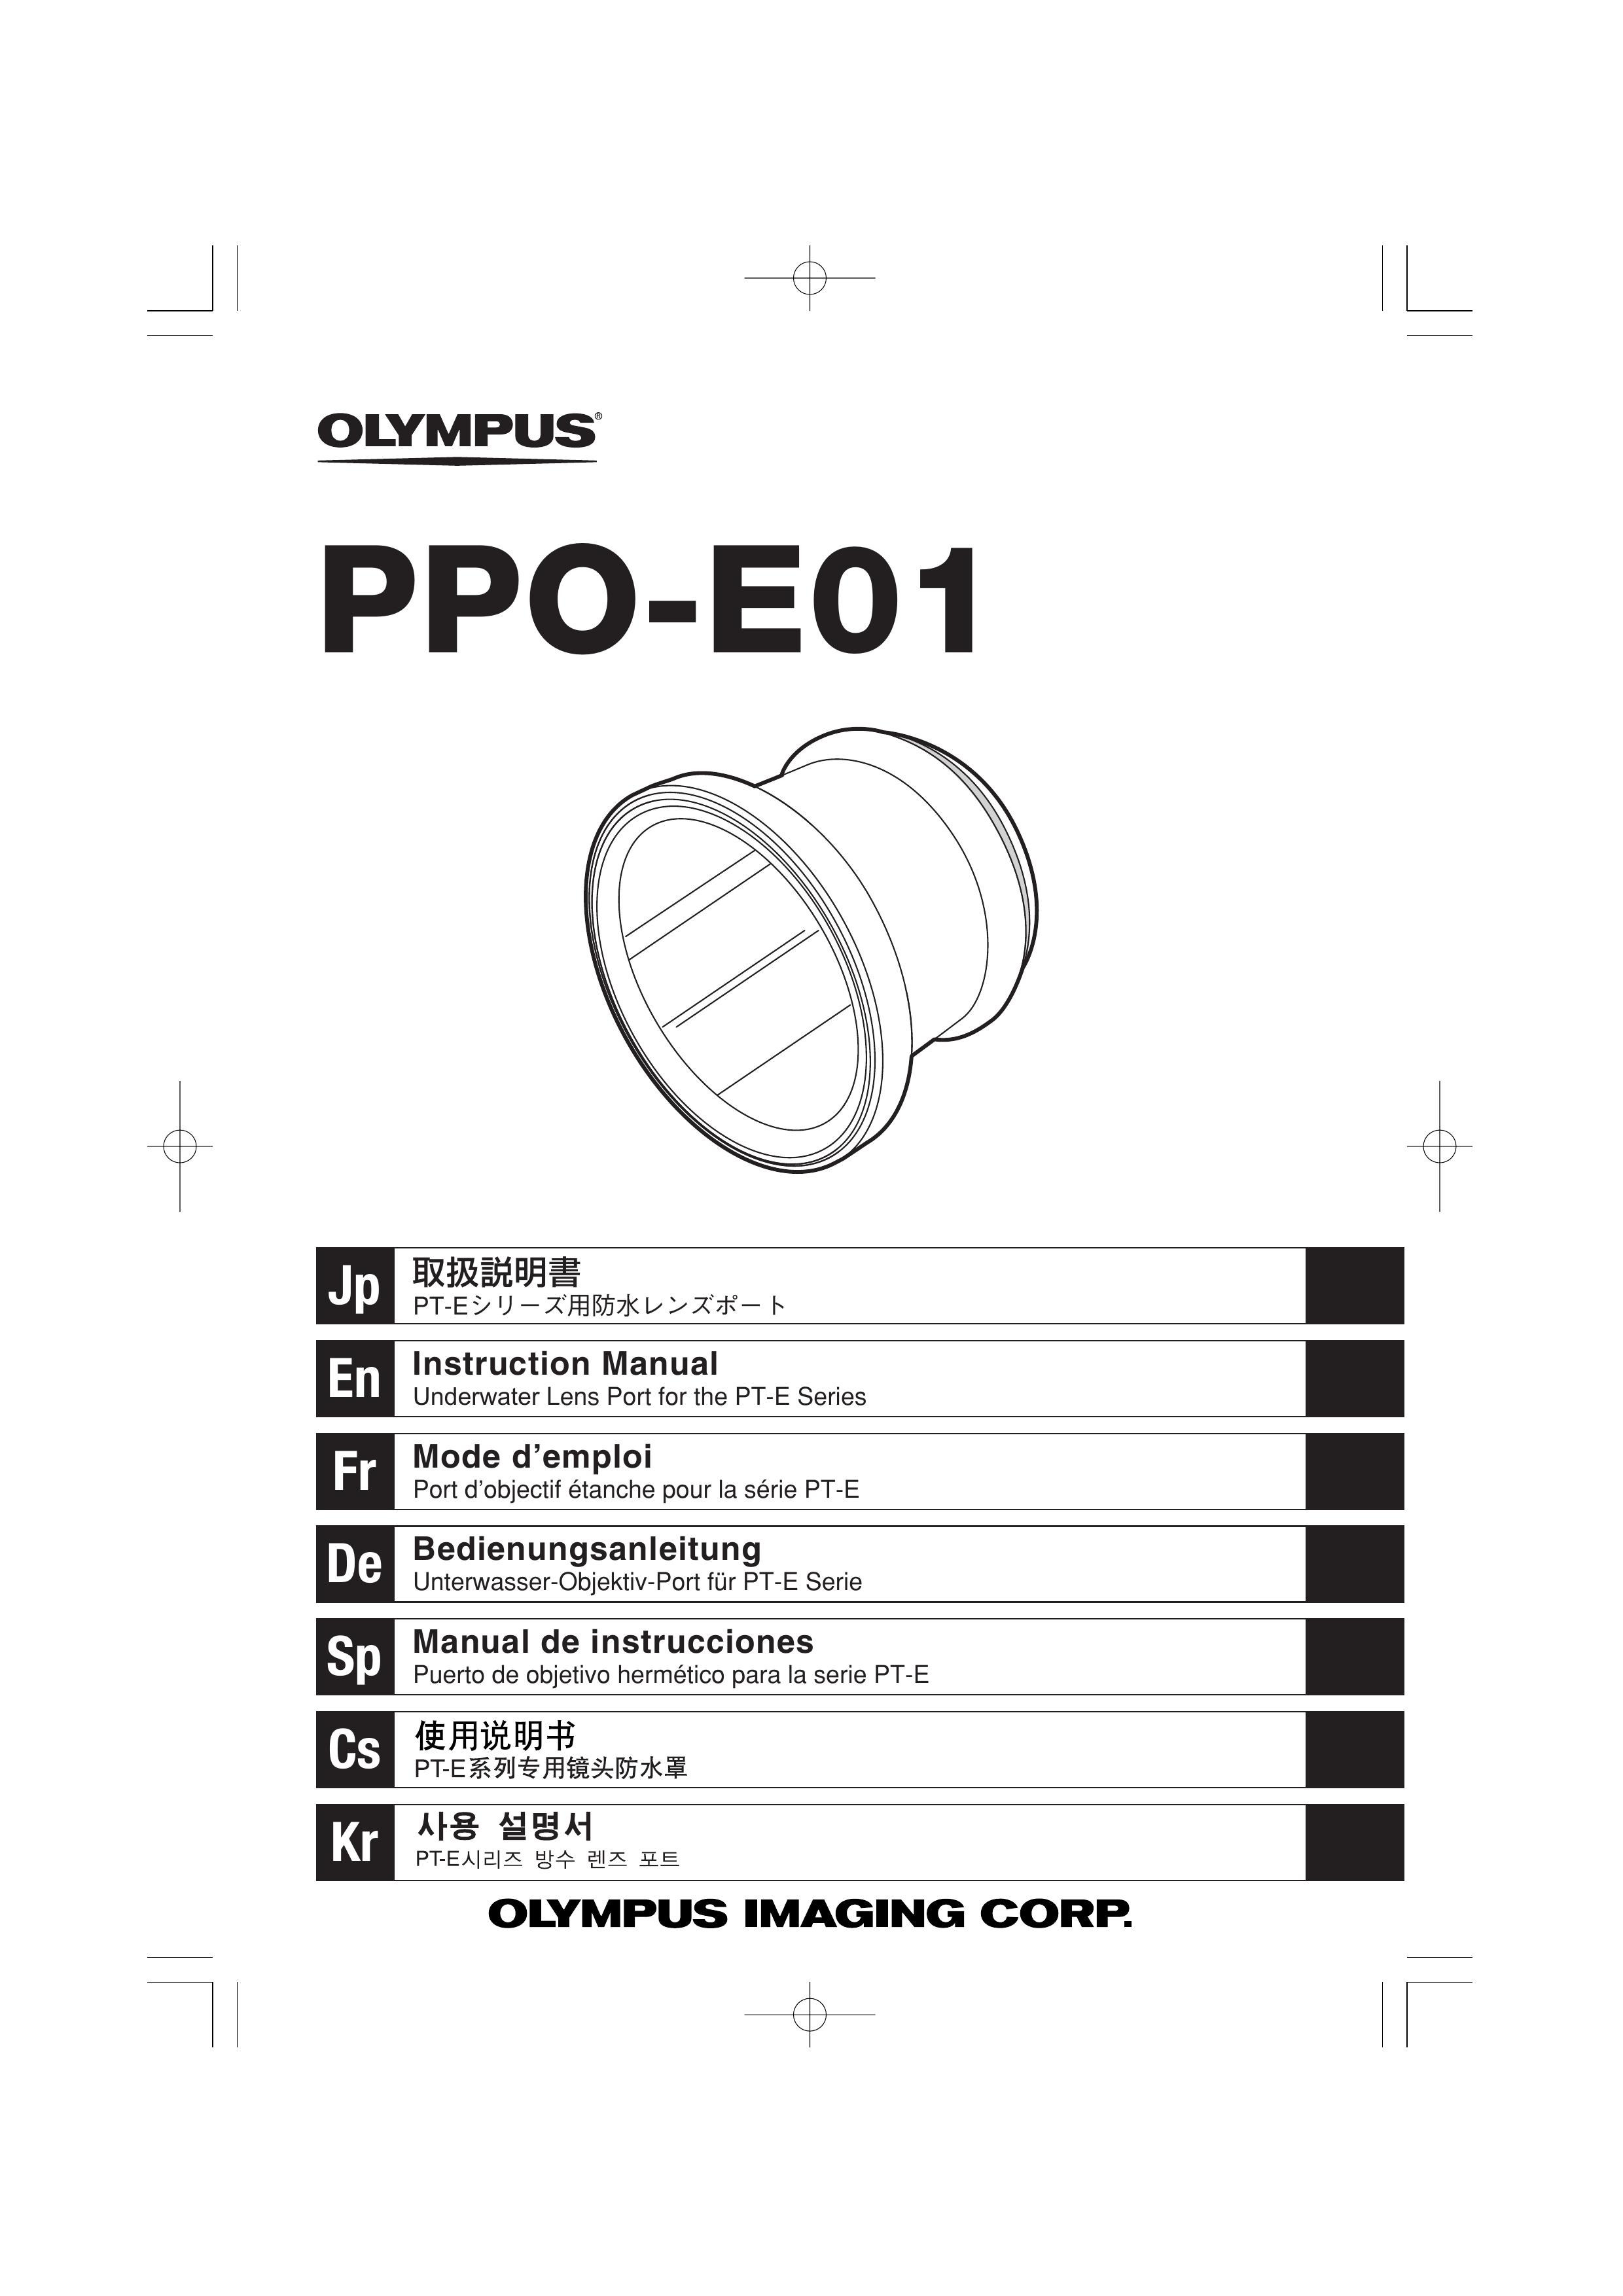 Olympus PPO-E01 Camera Accessories User Manual